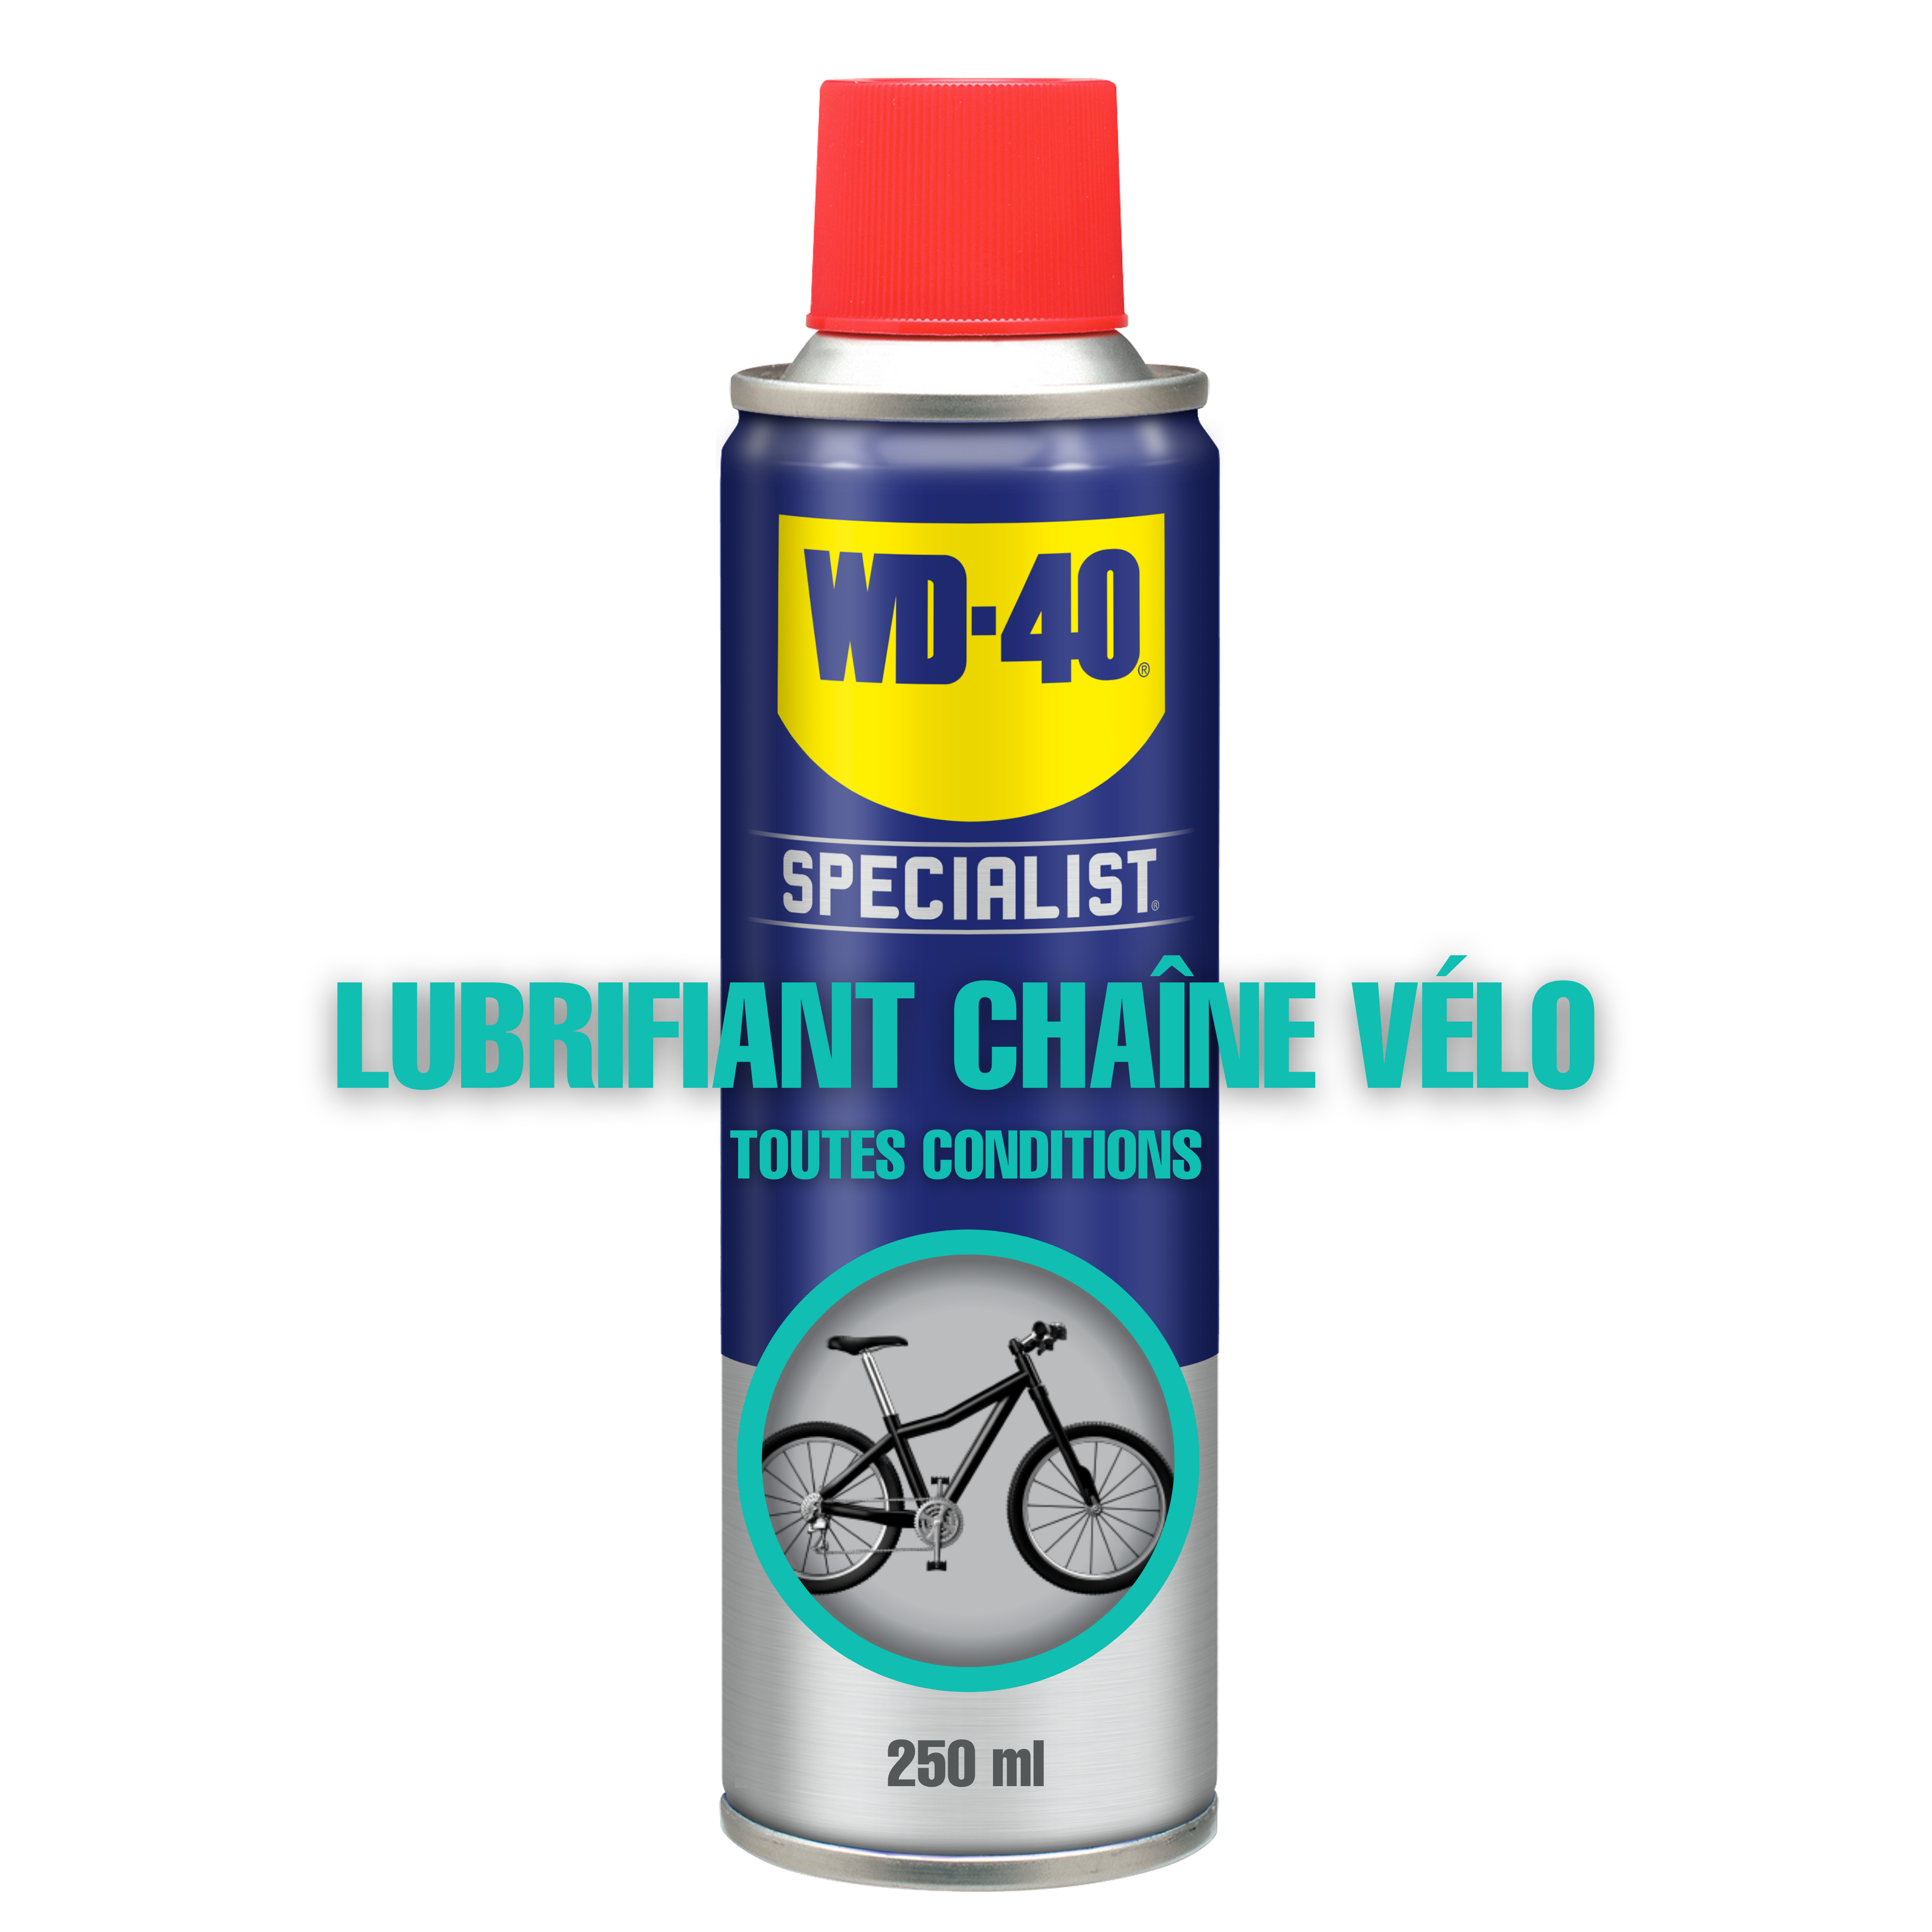 Lubrifiant chaîne vélo conditions humides - WD-40 - Mr.Bricolage